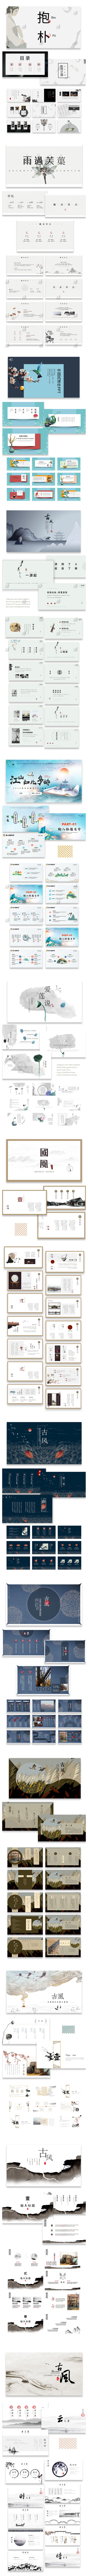 436款高级感中国风ppt模板茶白淡雅复古传统古典中式答辩工作汇报素材 设计素材 第3张